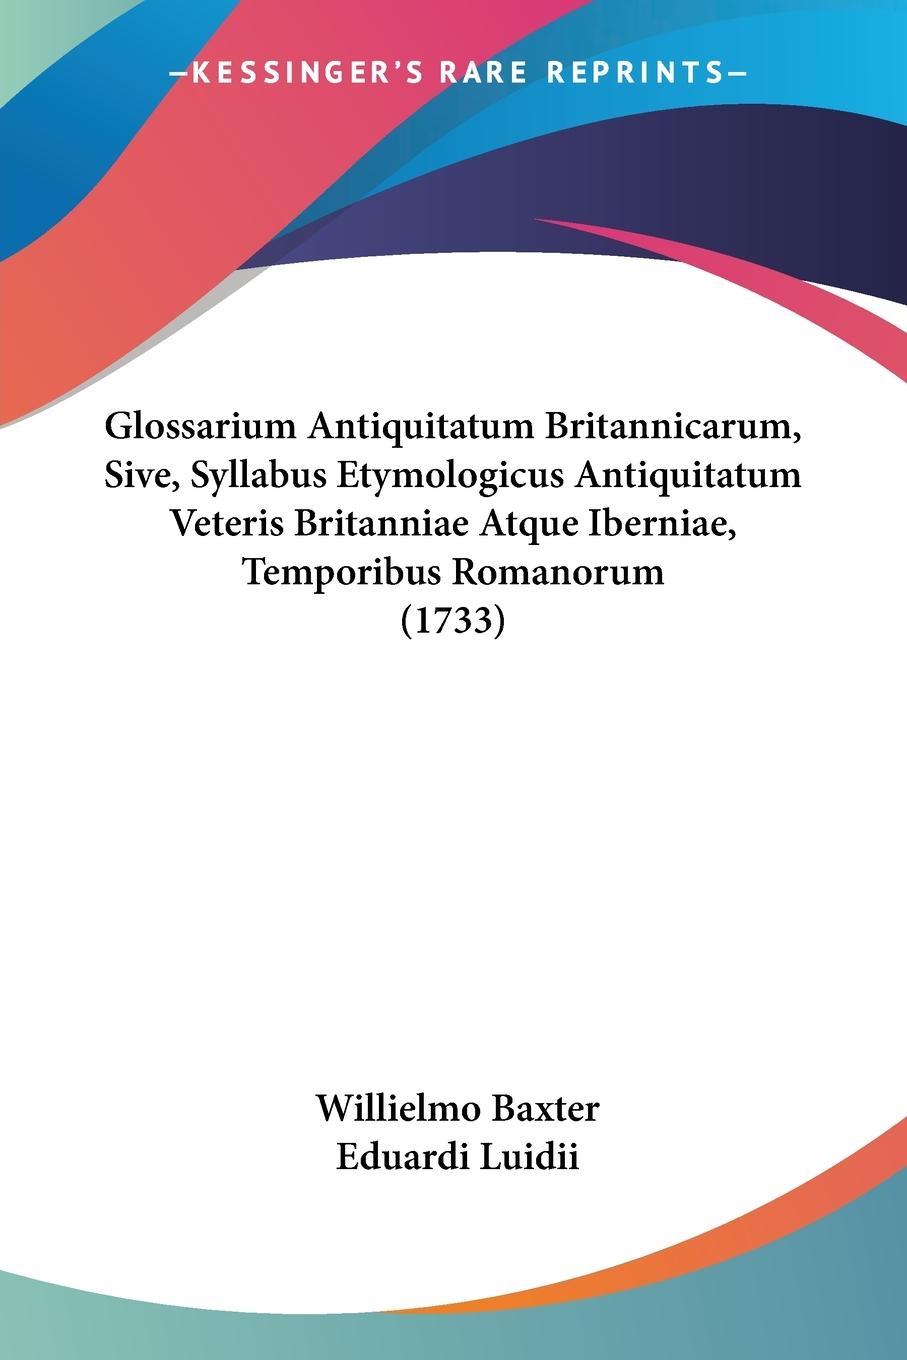 Glossarium Antiquitatum Britannicarum, Sive, Syllabus Etymologicus Antiquitatum Veteris Britanniae Atque Iberniae, Temporibus Romanorum (1733) - Baxter, Willielmo Luidii, Eduardi